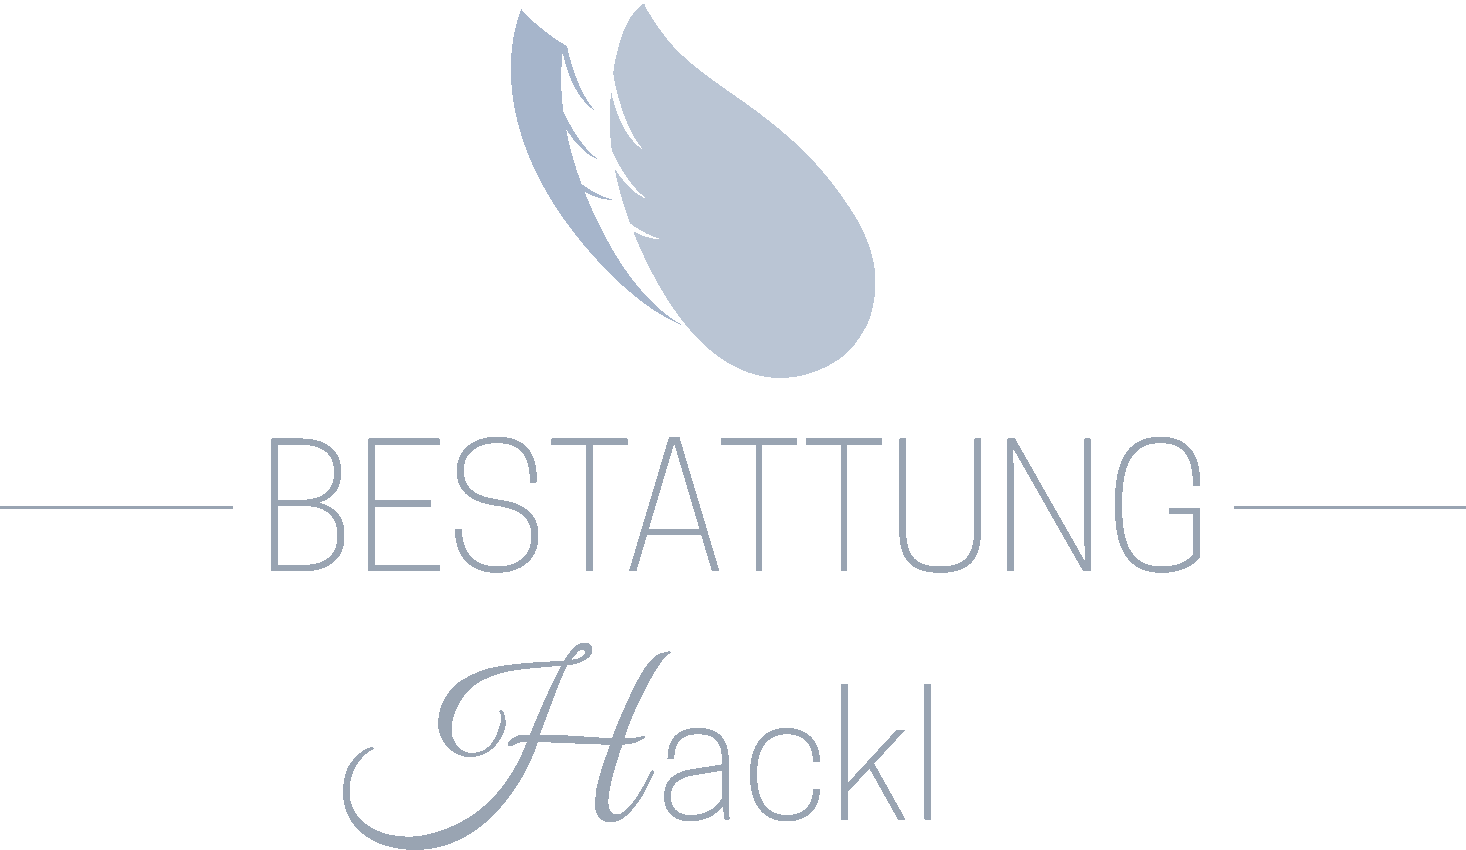 Bestattung Hackl